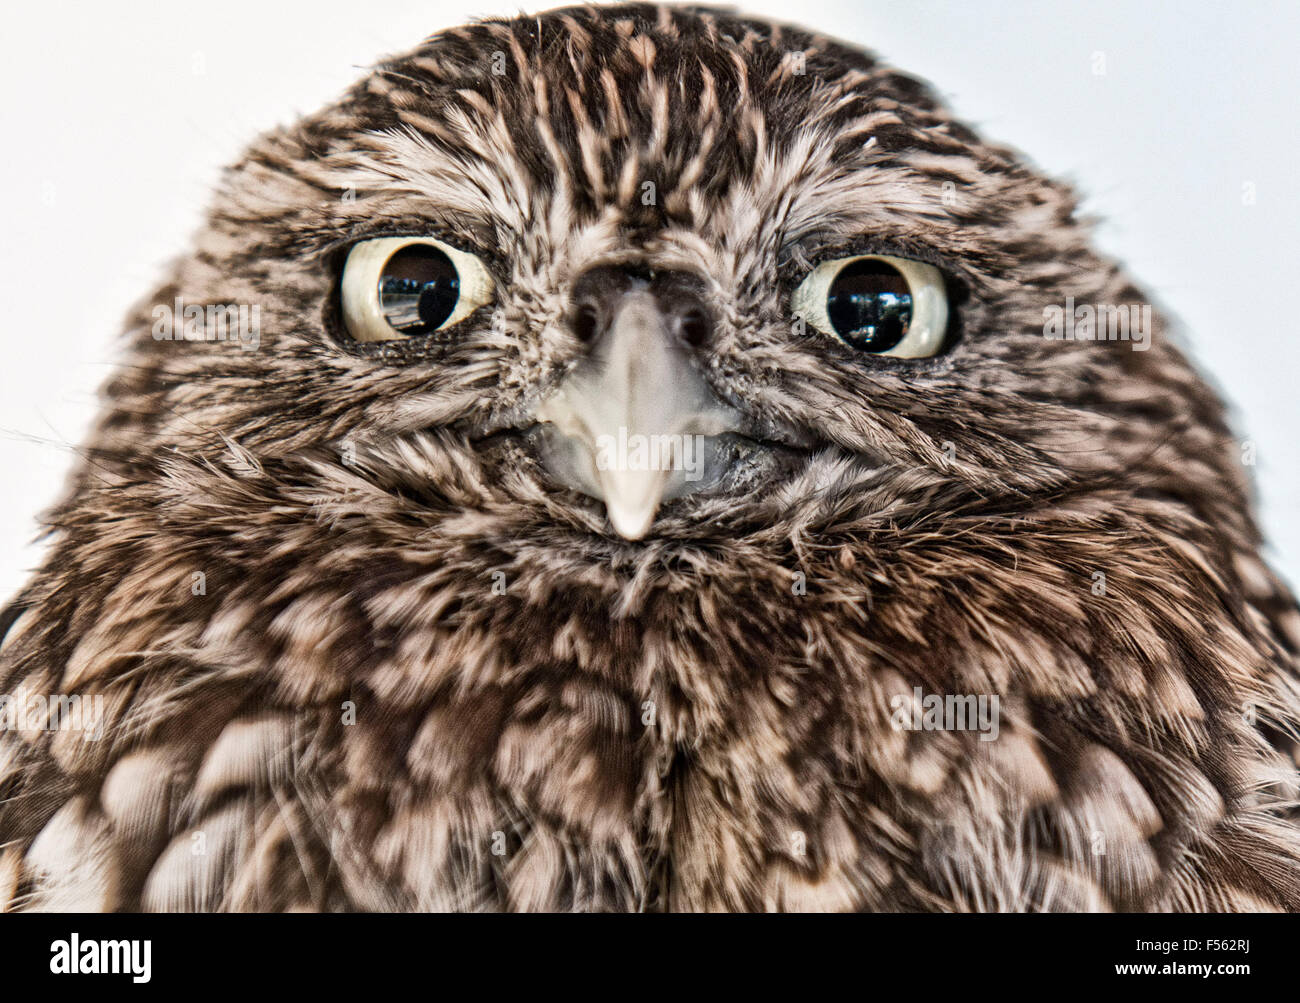 Europaeischer Steinkauz, Athene Noctua, little owl Stock Photo